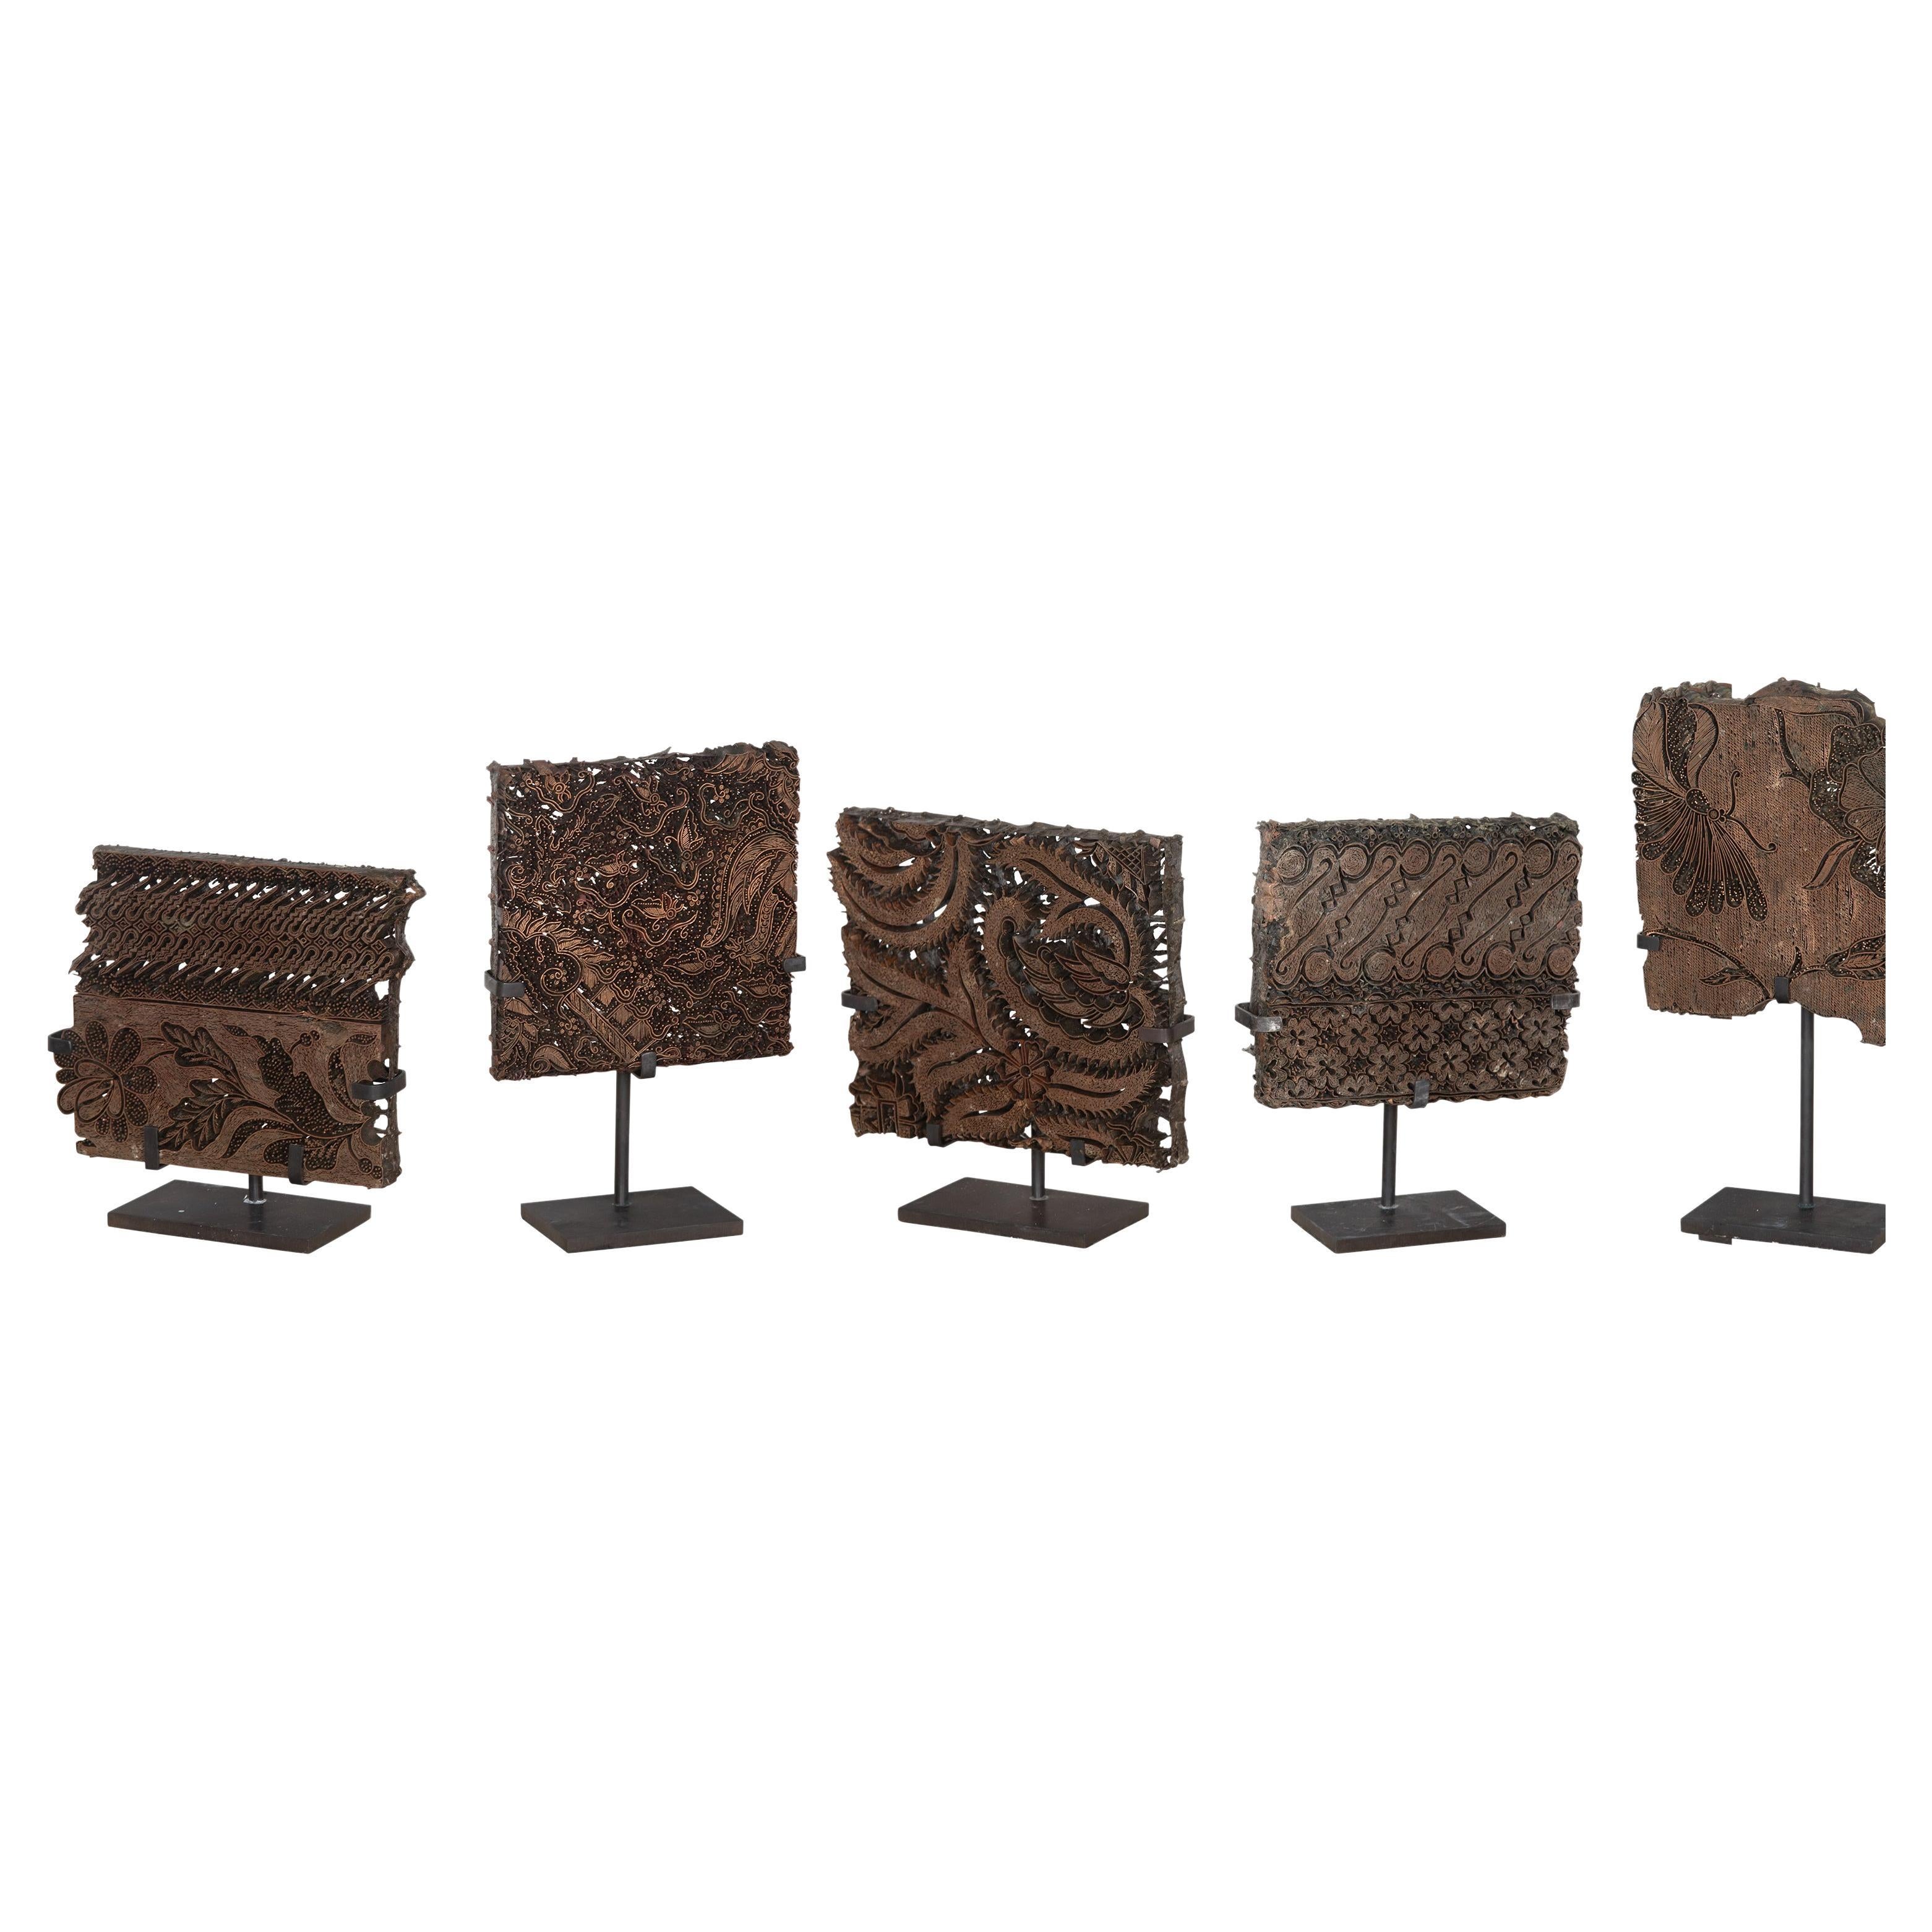 The Collective of Five 19th Century Batik Printing Blocks (Collection de cinq blocs d'impression en batik du 19e siècle)